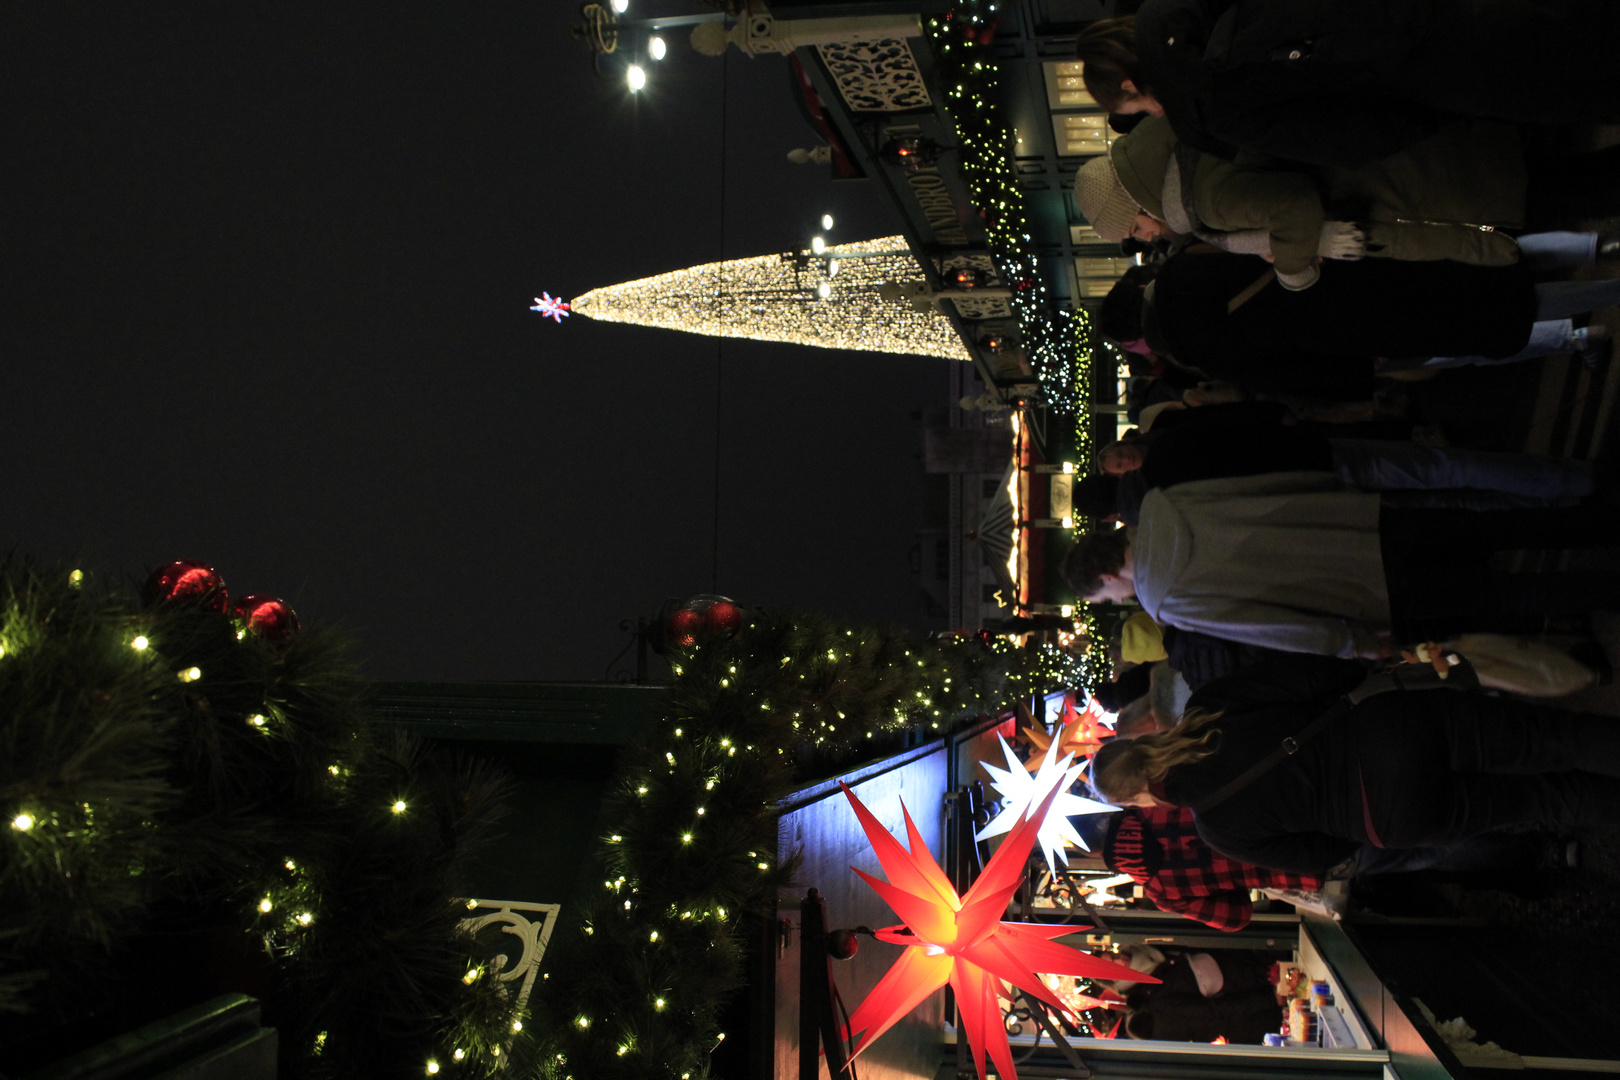 Sterne und Lichterbaum auf dem Weihnachtsmarkt.